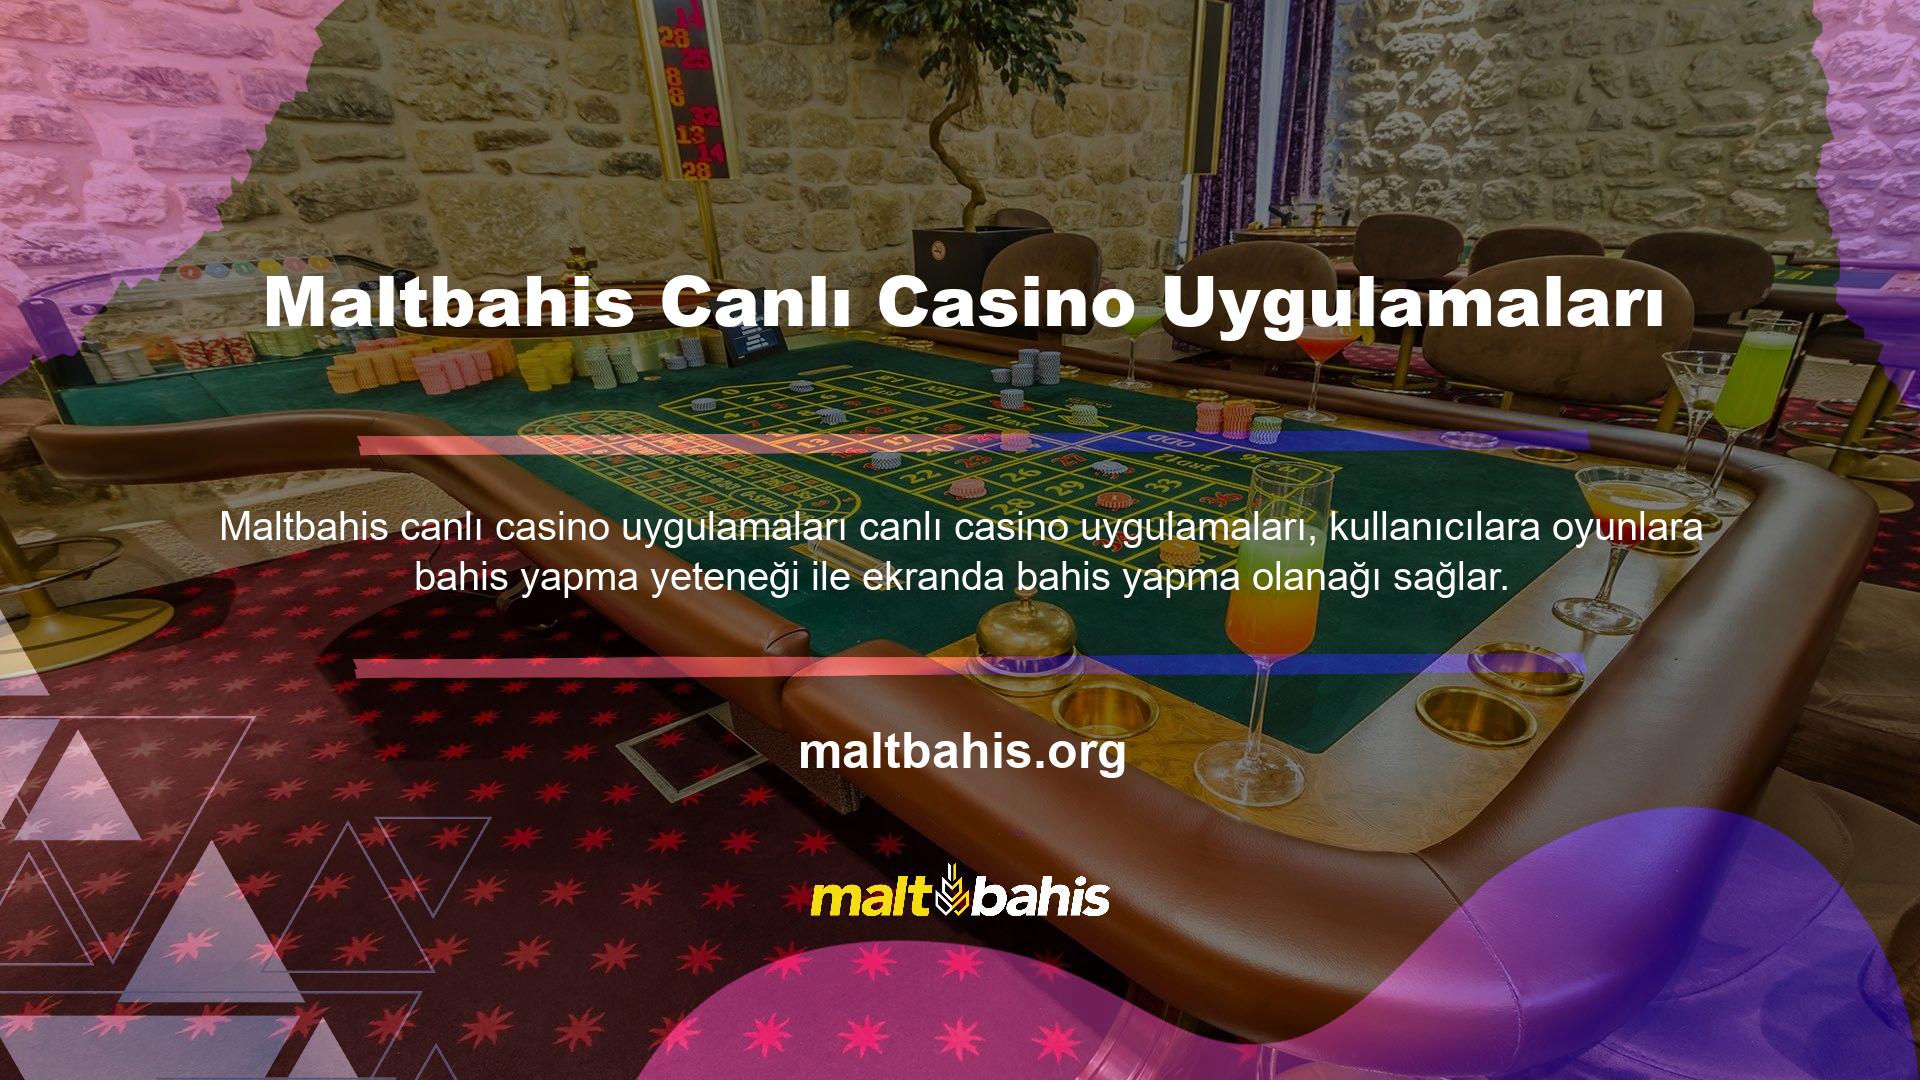 Uygulama ekranında bir casino seçeneği belirir ve işlem bittiğinde kullanıcının bahis oynamasına olanak tanır